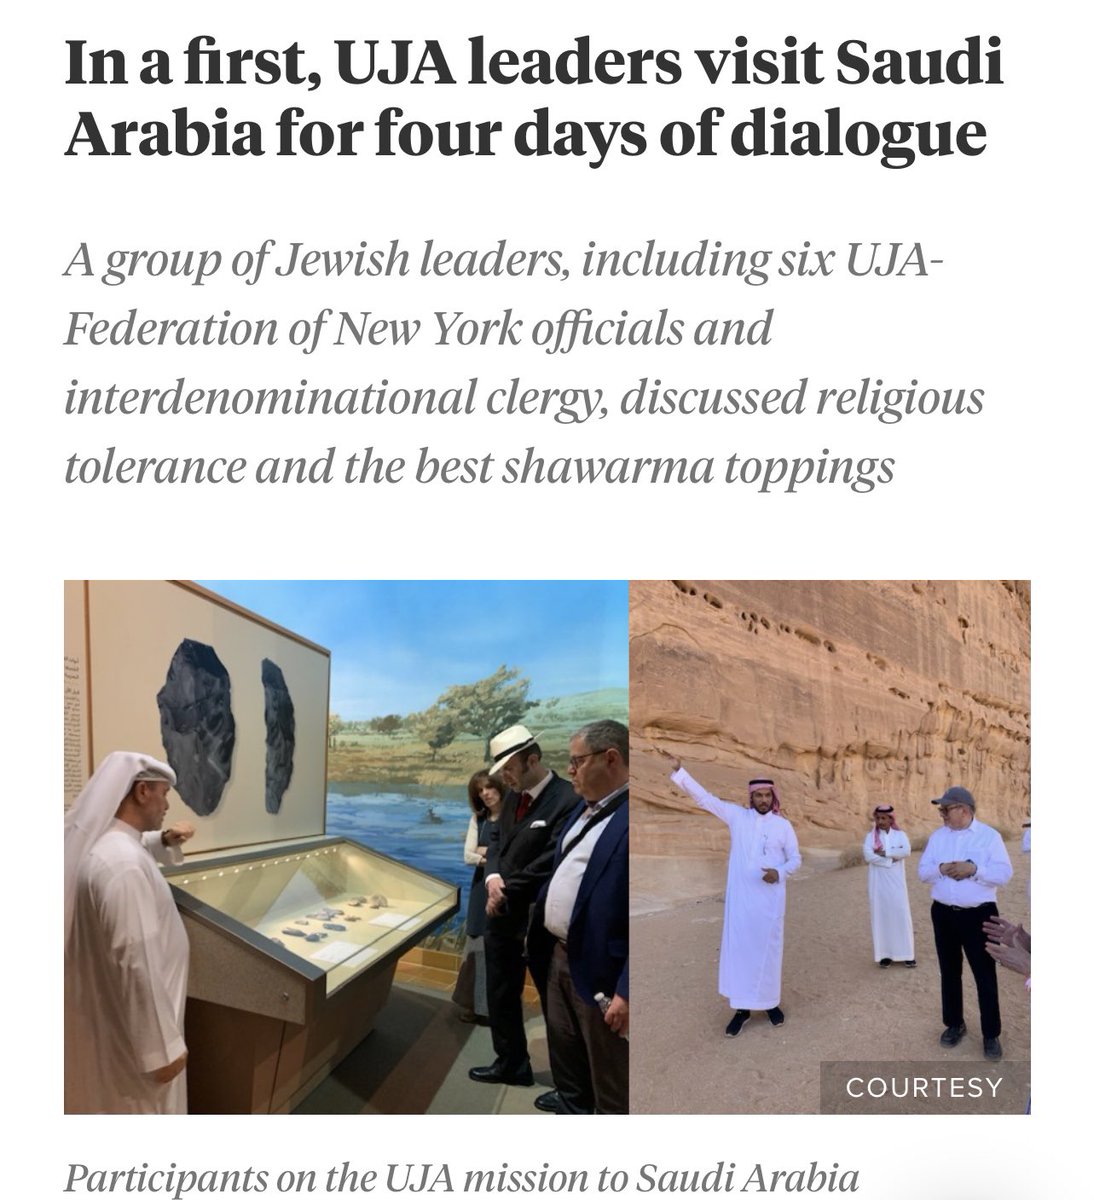 لأول مرة توجهت بعثة من زعماء الجالية اليهودية  الامريكية الى السعودية   للتحاور حوار عن